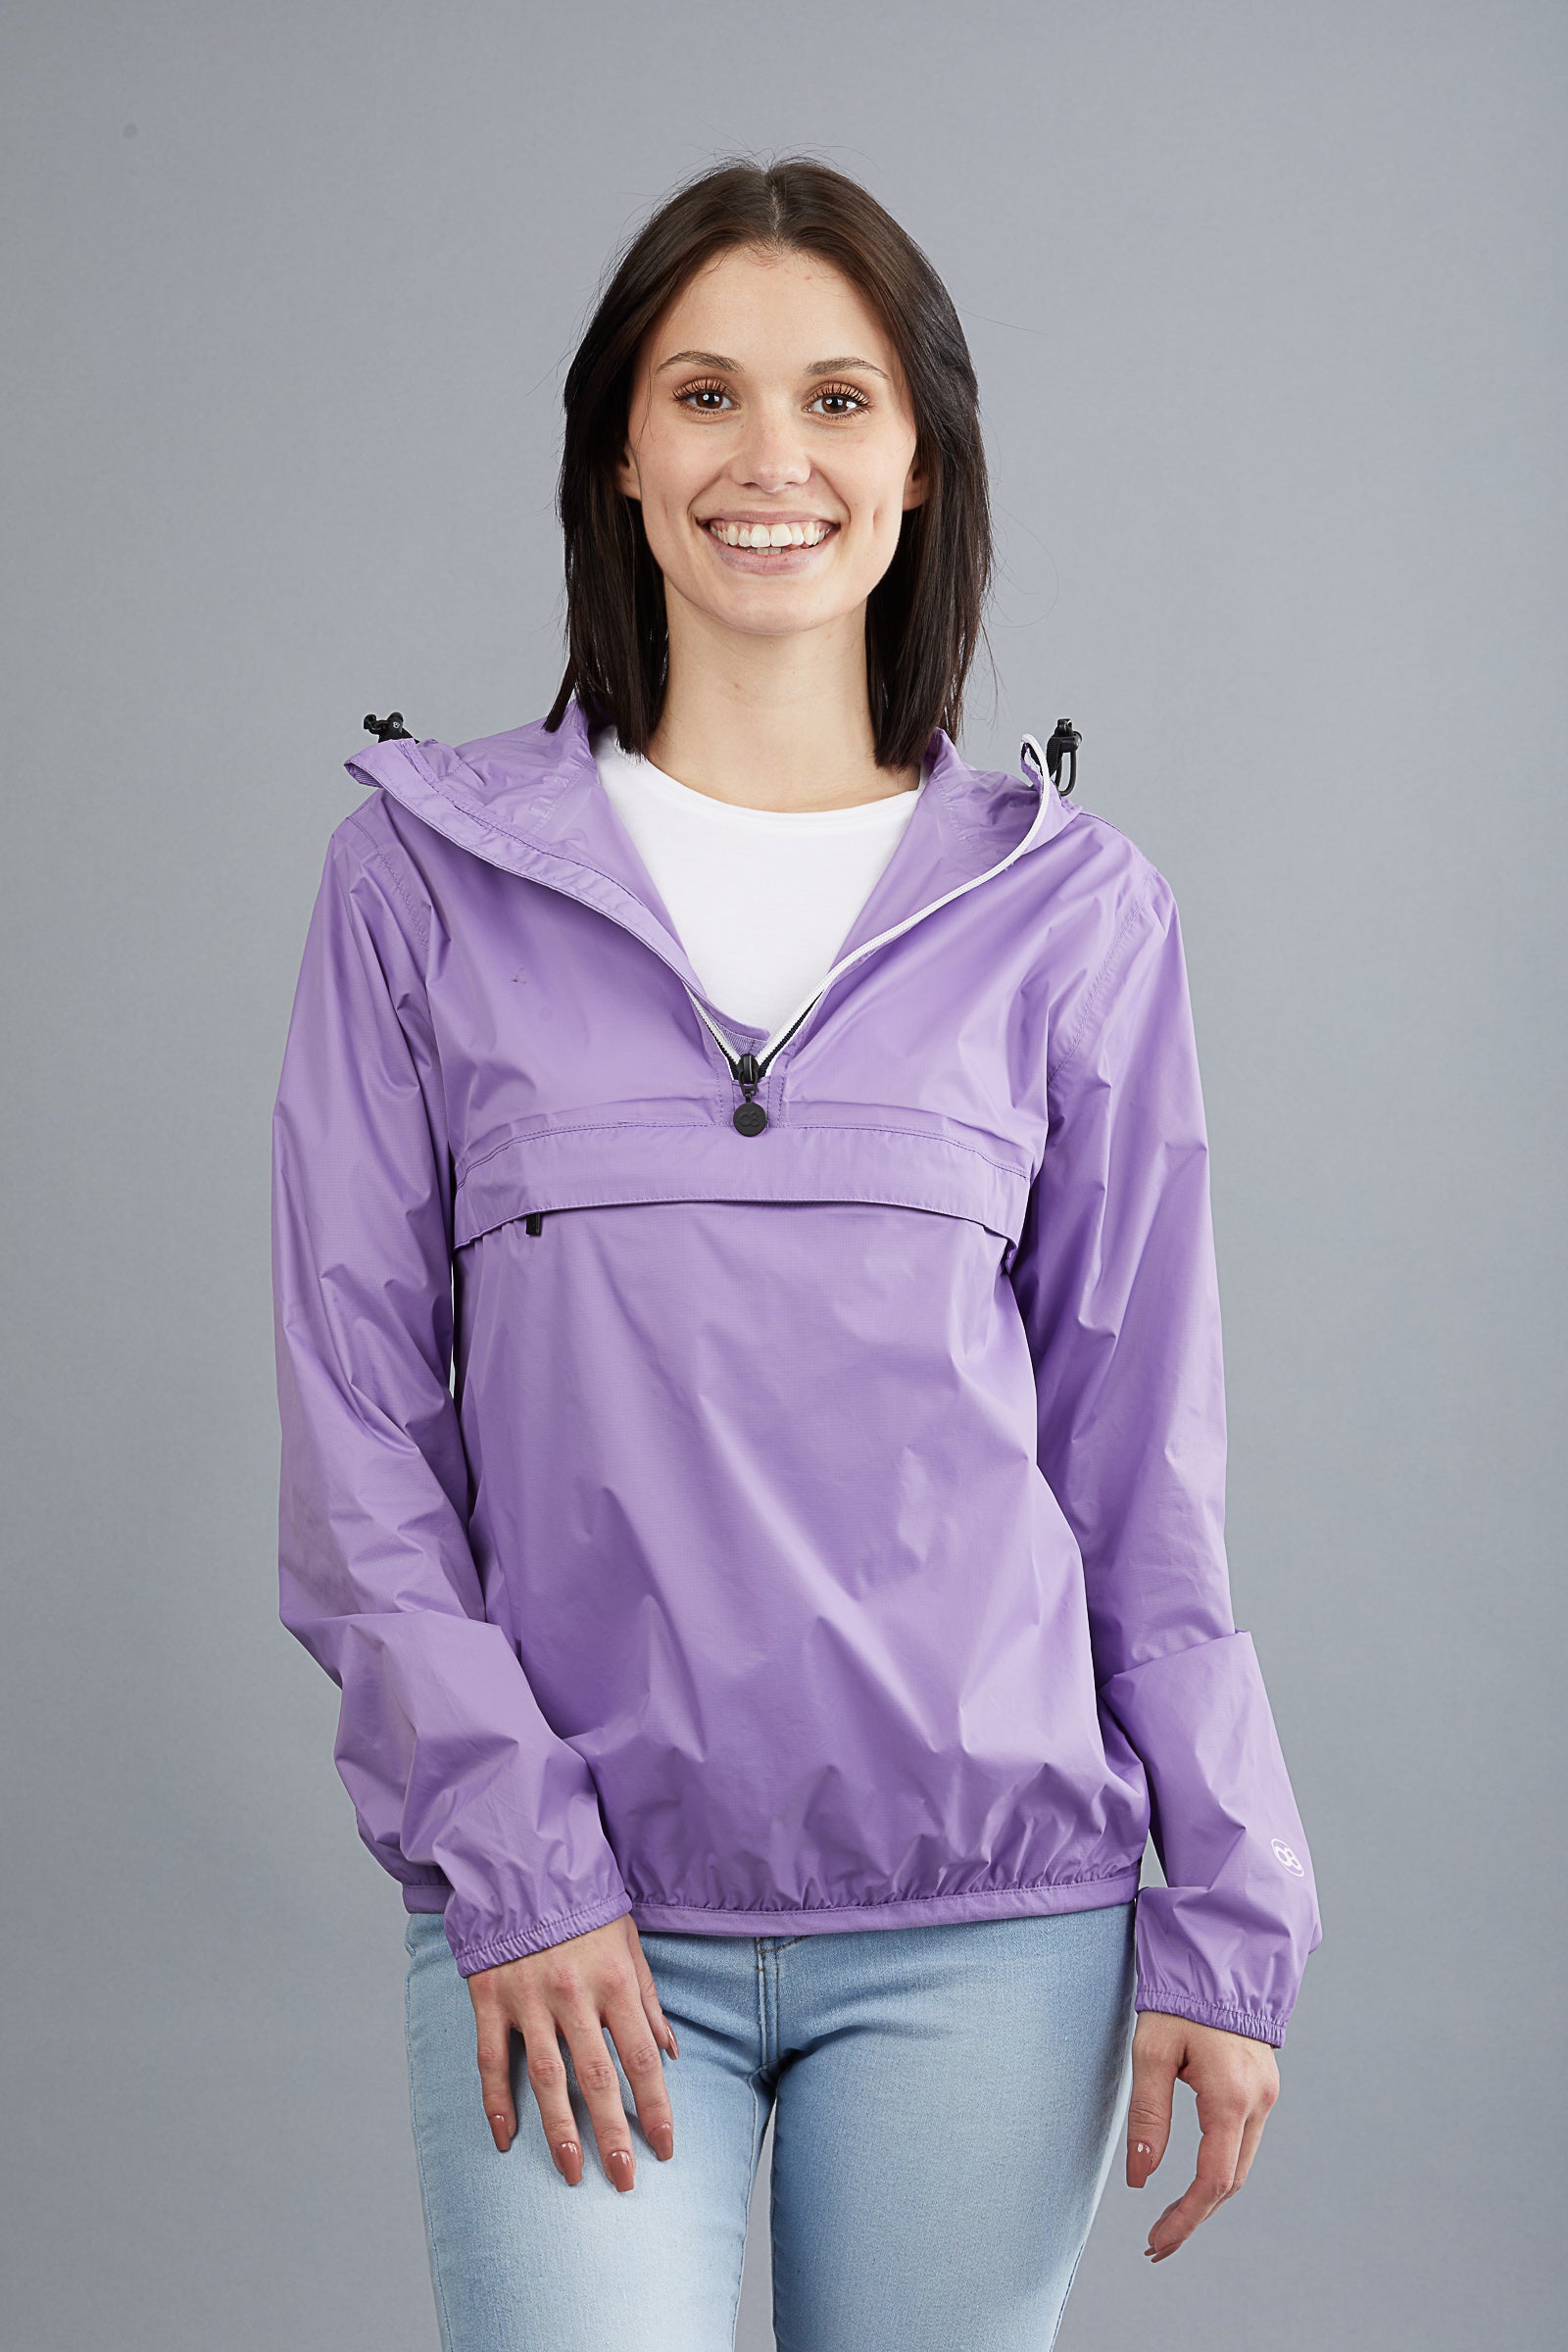 Light purple quarter zip packable rain jacket and windbreaker